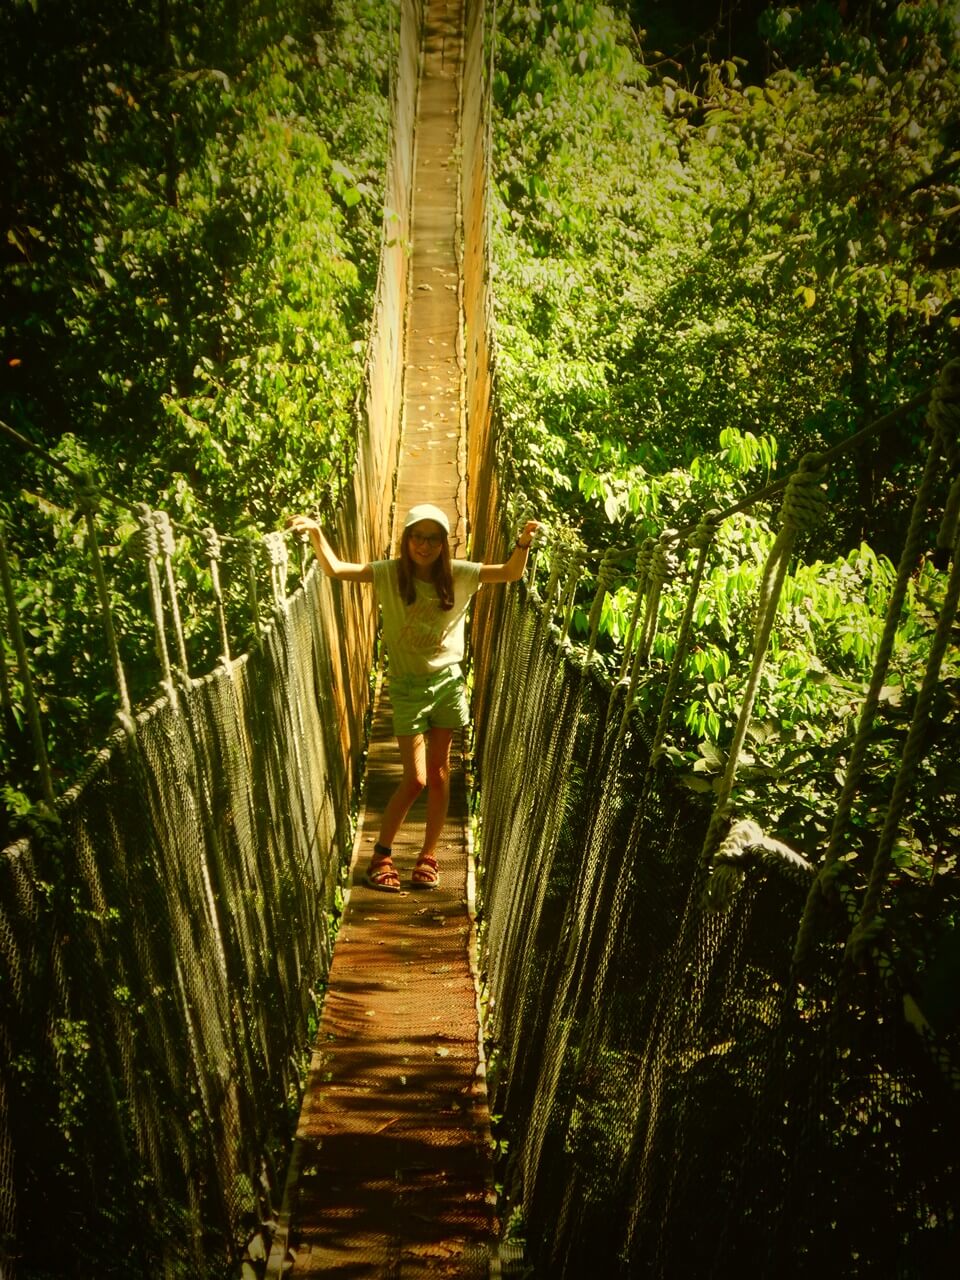 Voyage Costa Rica avec des enfants 15 jours au Costa Rica en famille | Blog VOYAGES ET ENFANTS